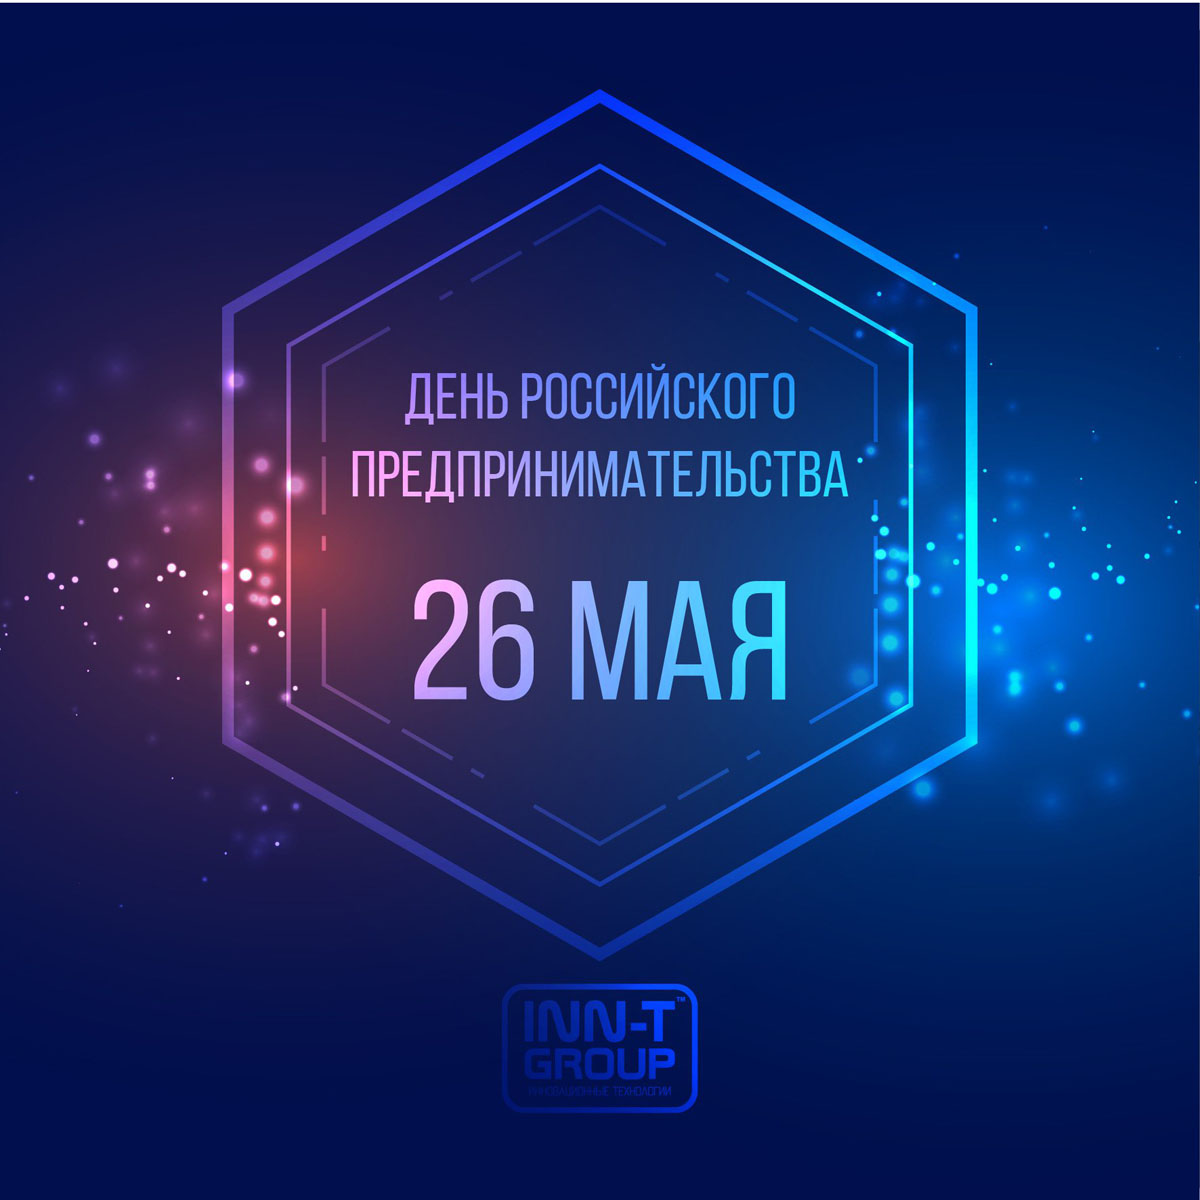 Поздравляем с днем российского предпринимательства!